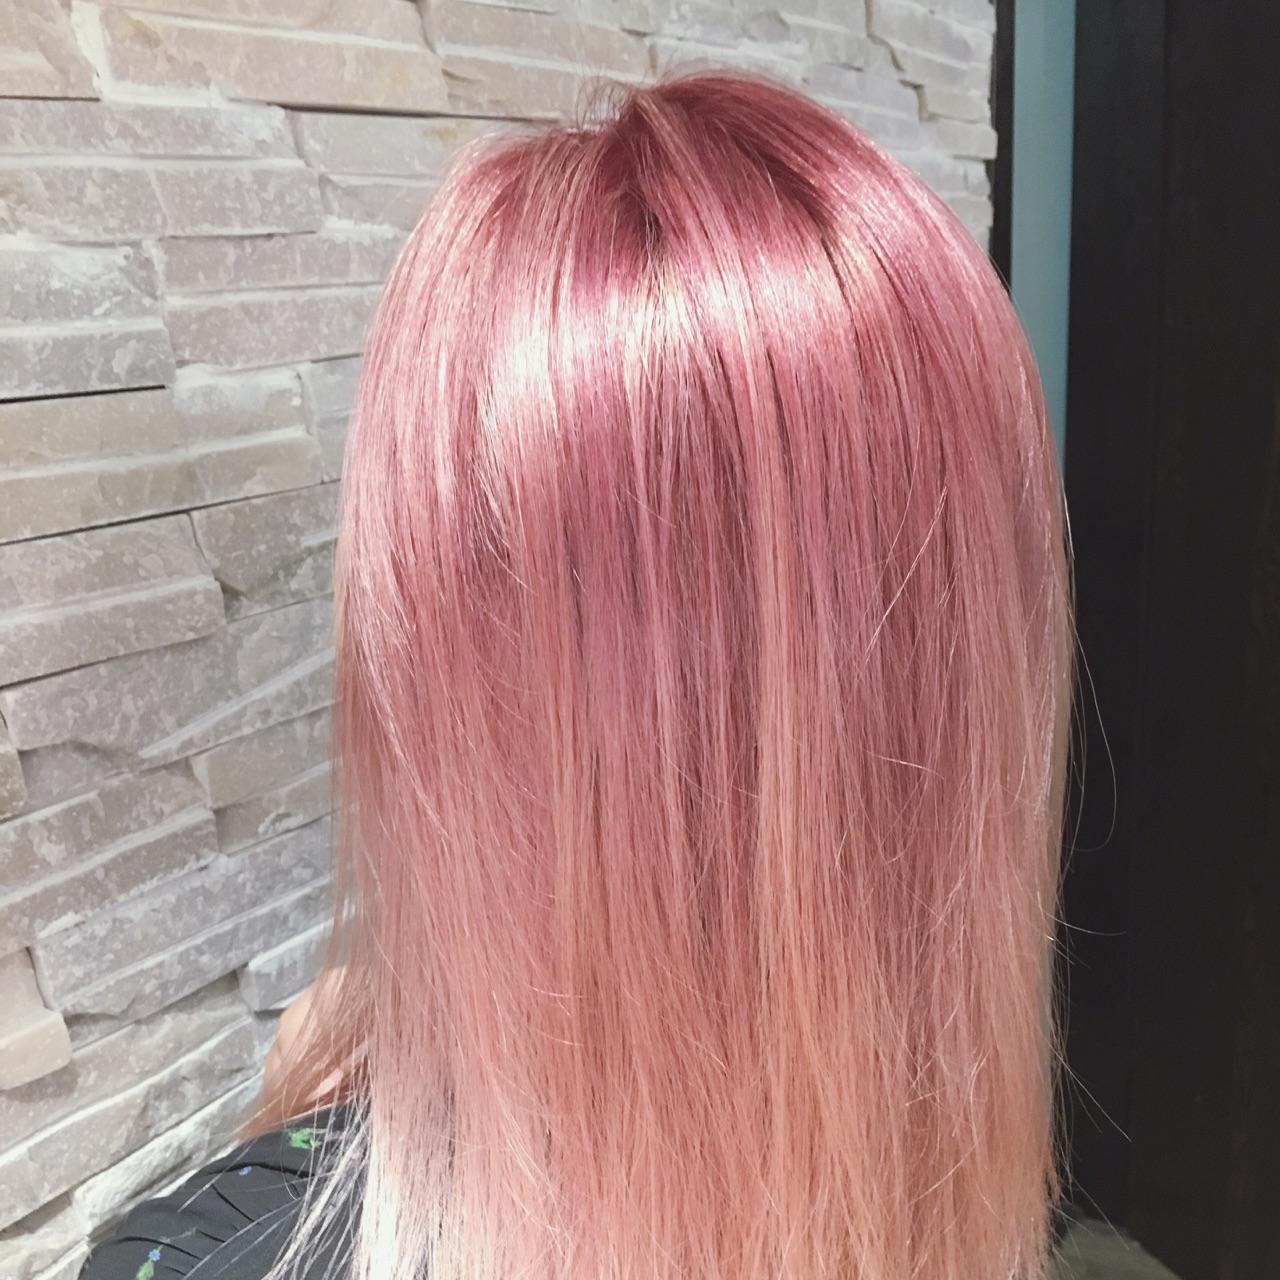 染粉色头发是种怎样的体验? 